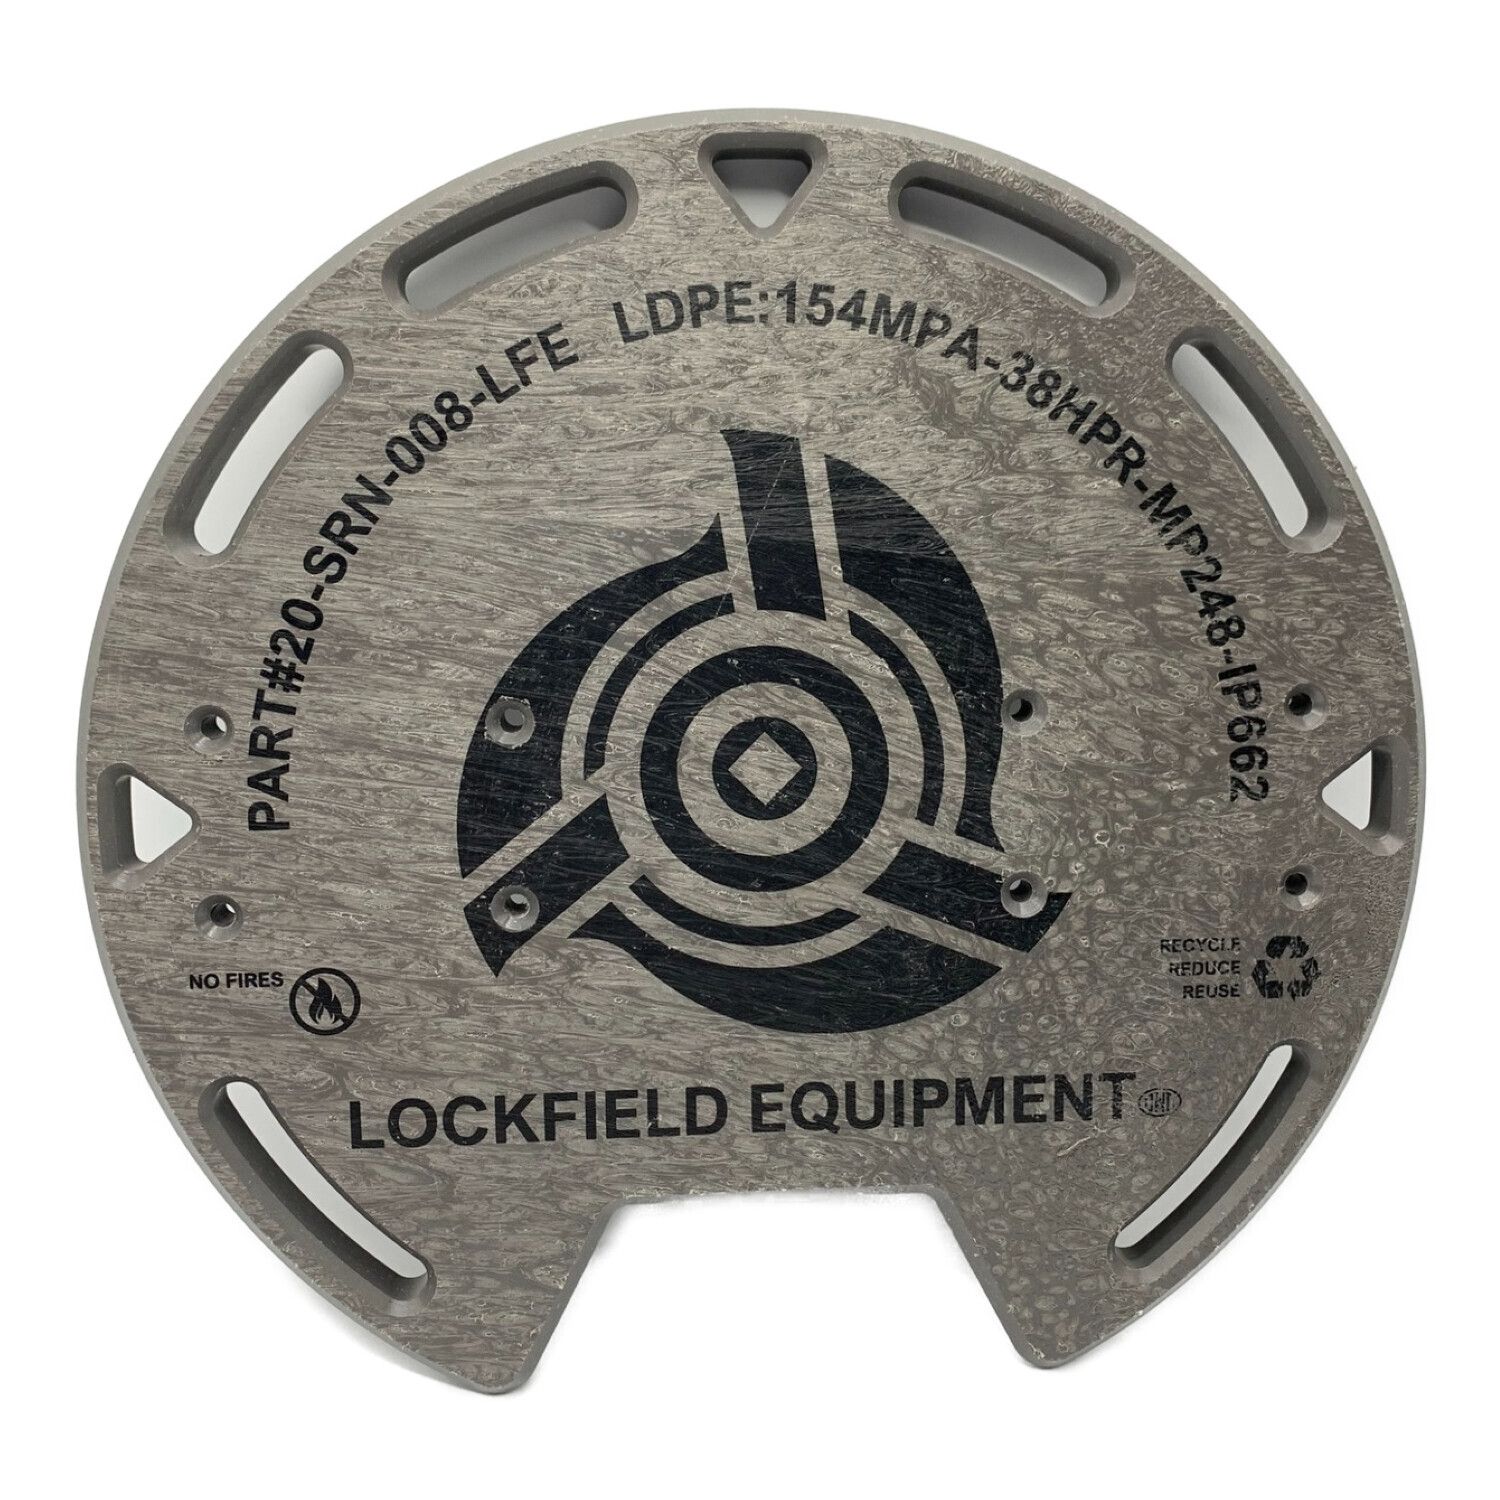 Lockfield Equipment (ロックフィールドイクイップメント